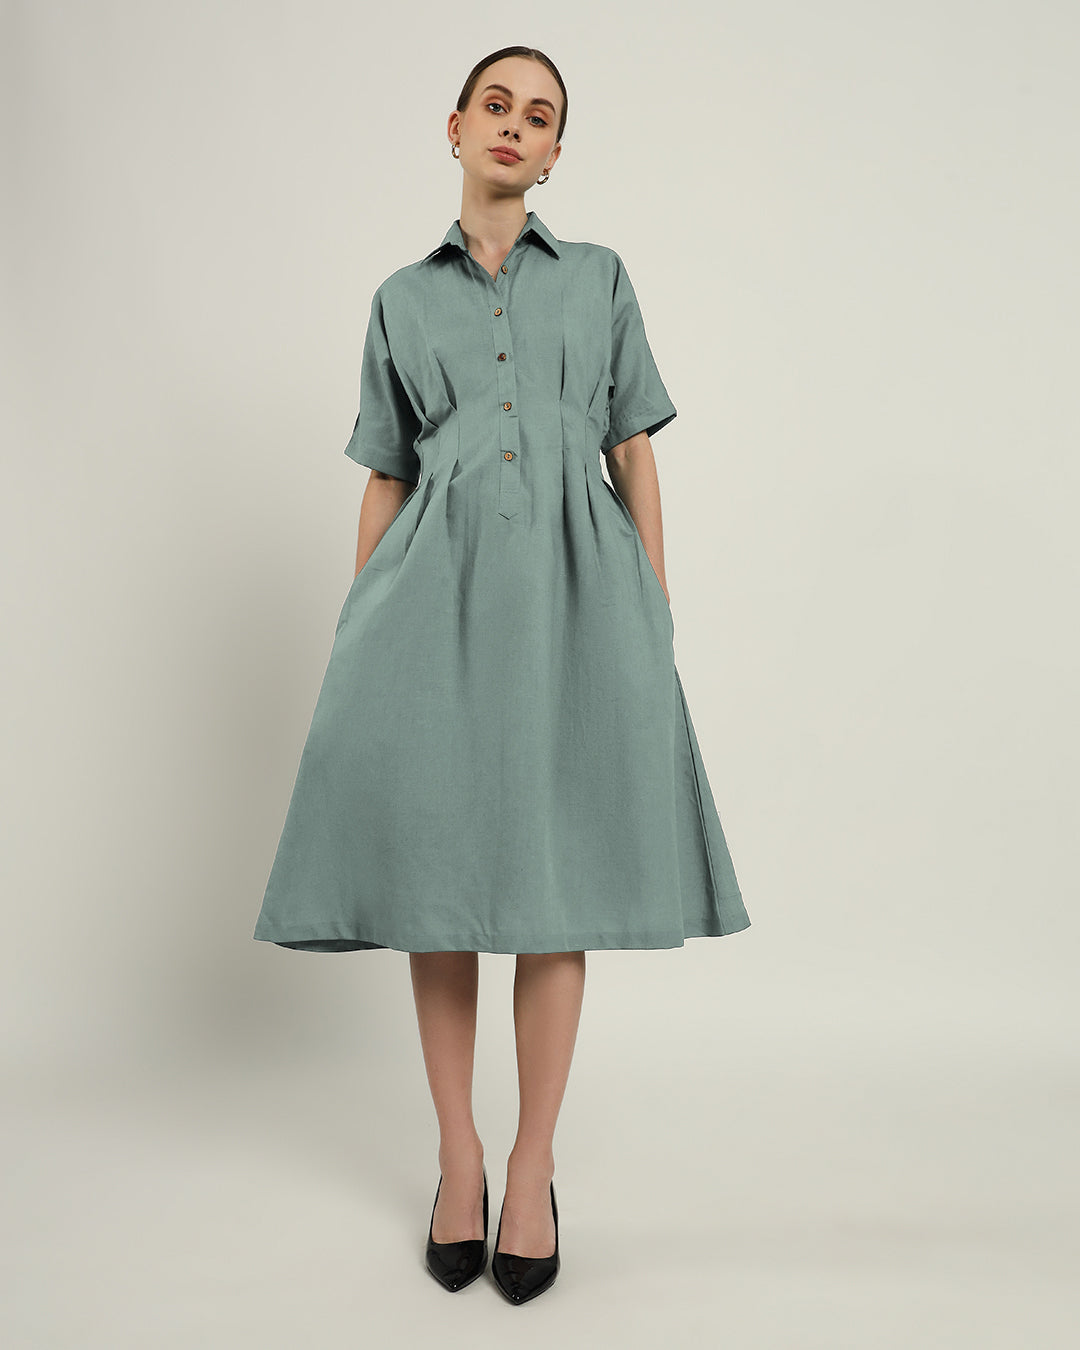 The Salford Daisy Carolina Linen Dress